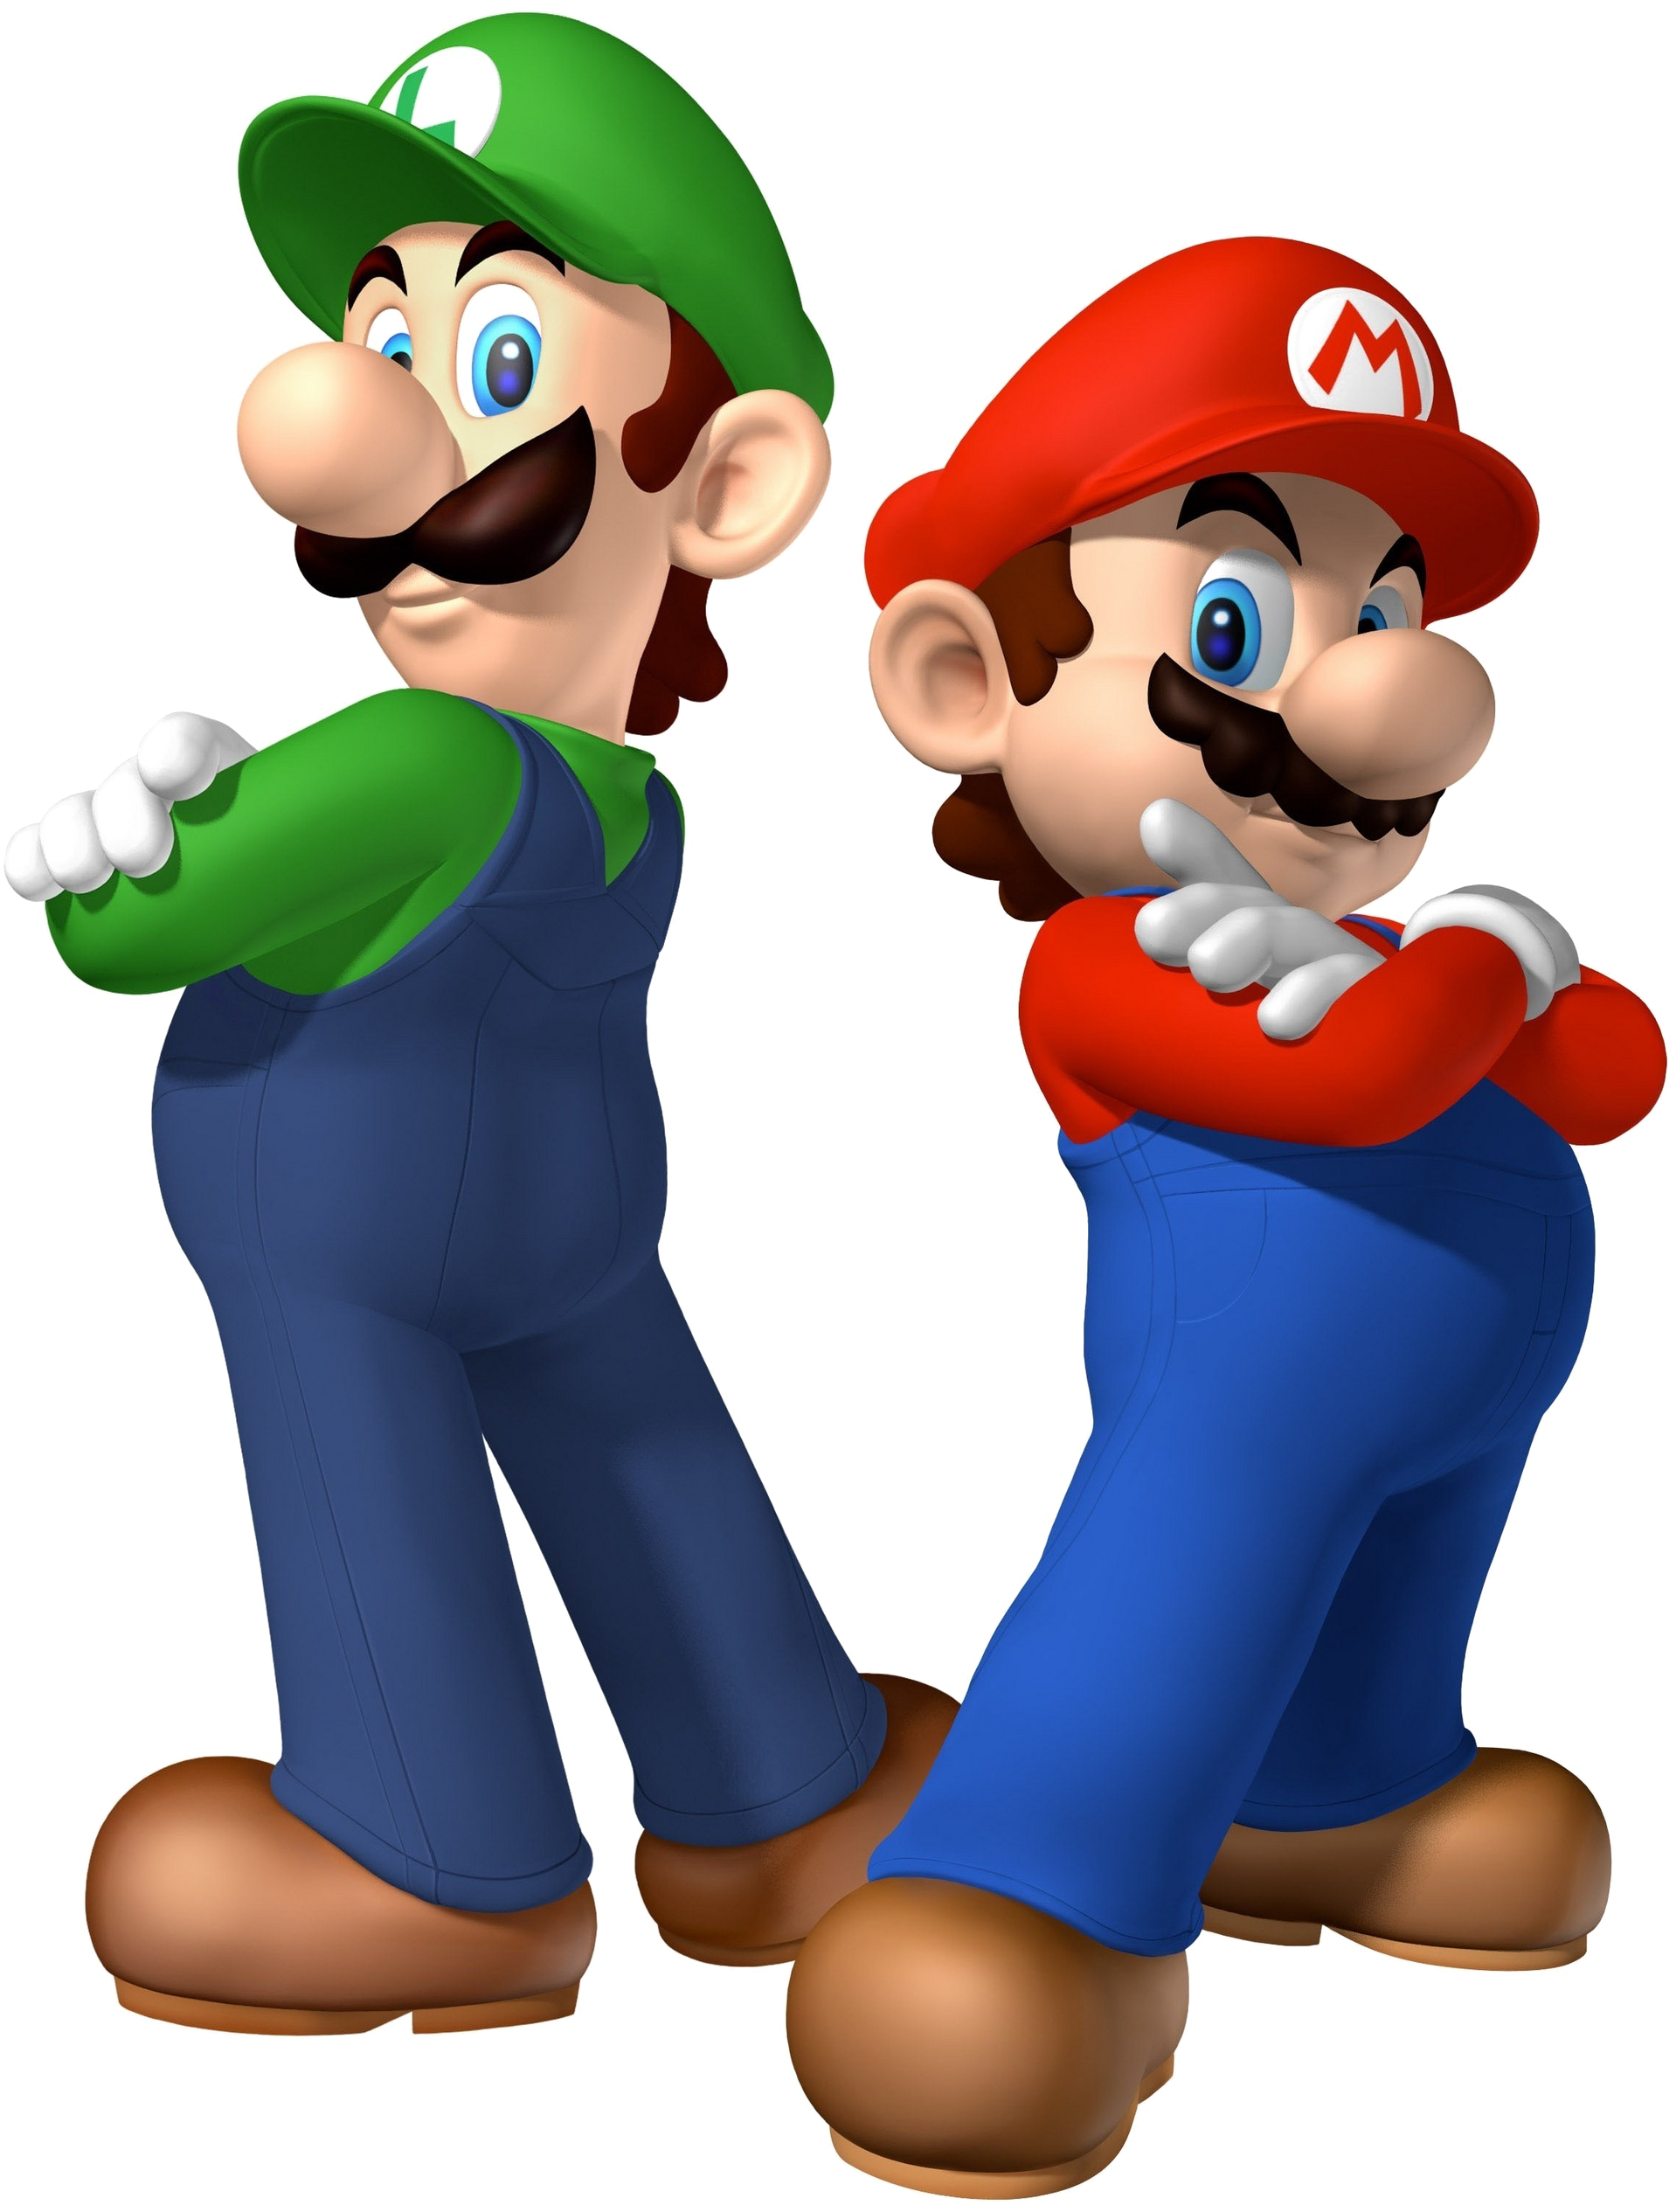 Download Mario And Luigi Png Image Transparent - Super Mario And Luigi